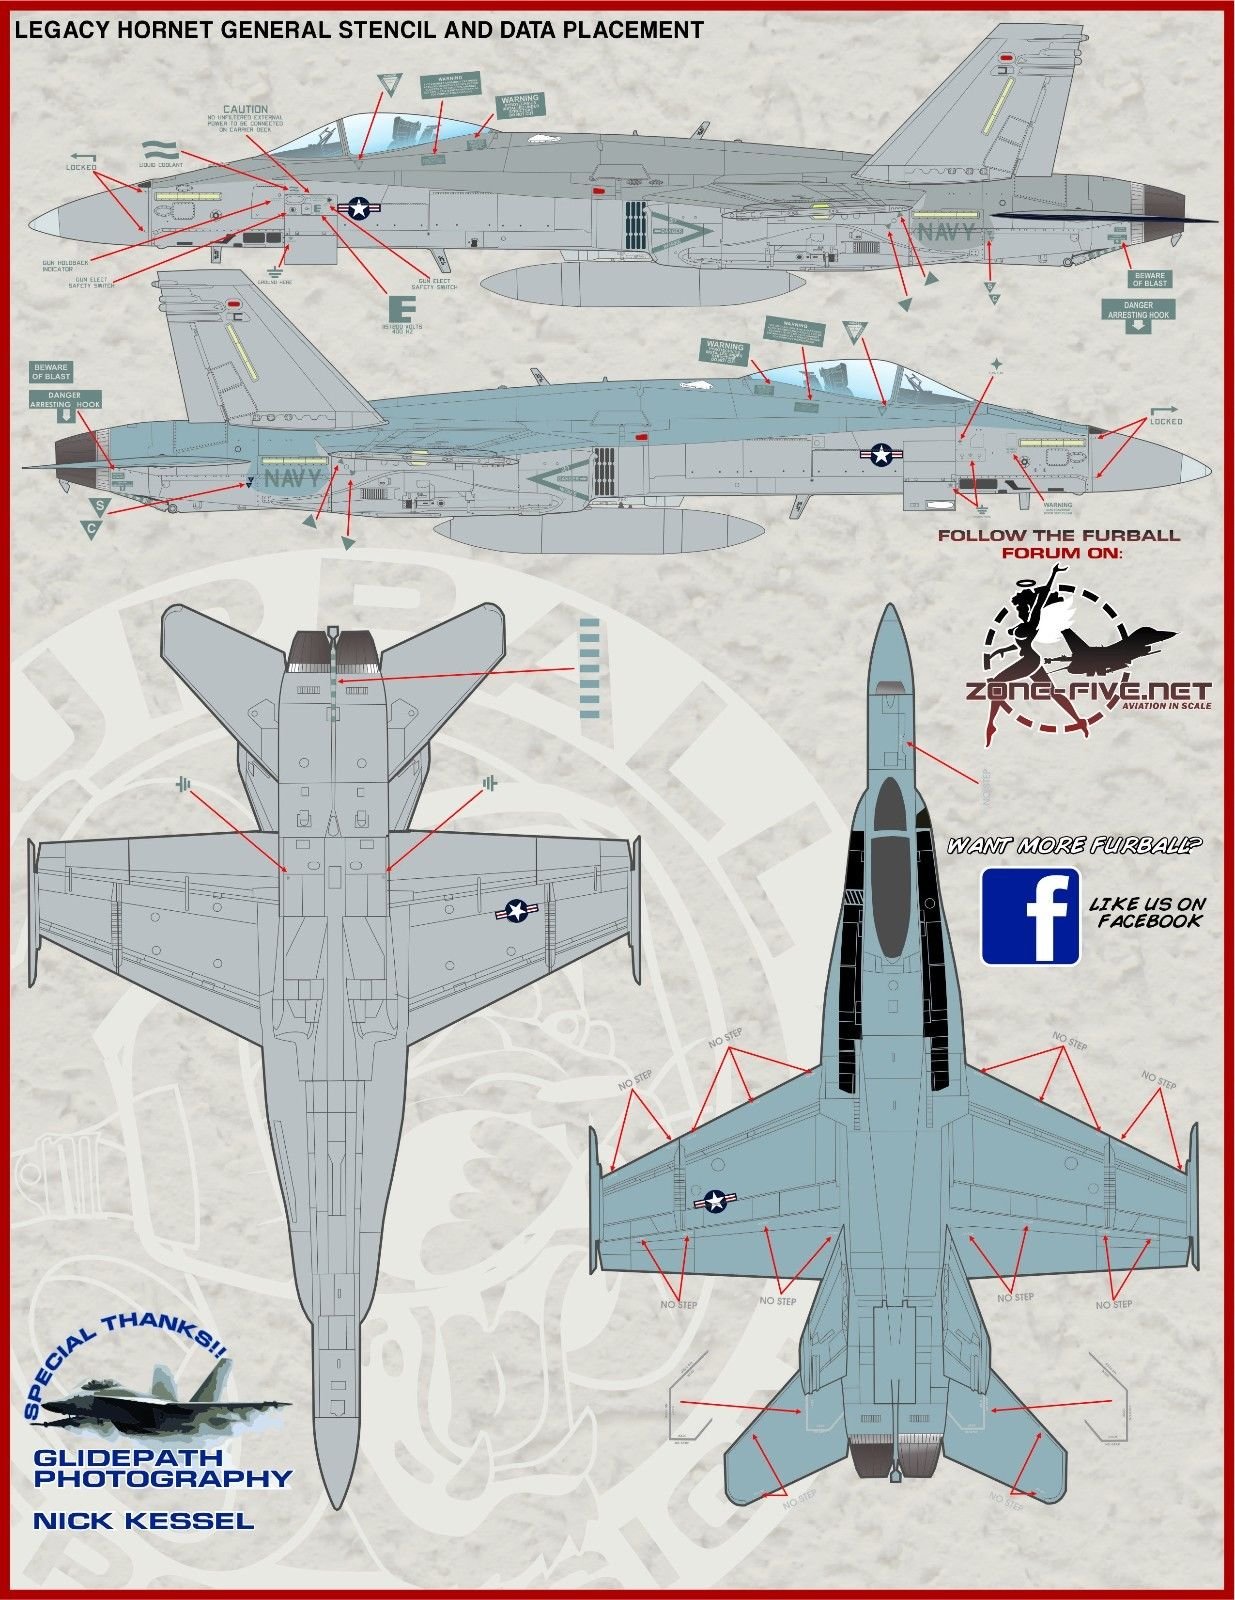 1/48 F/A-18 大黄蜂航空联队全明星"2014海洋航展回顾" - 点击图像关闭